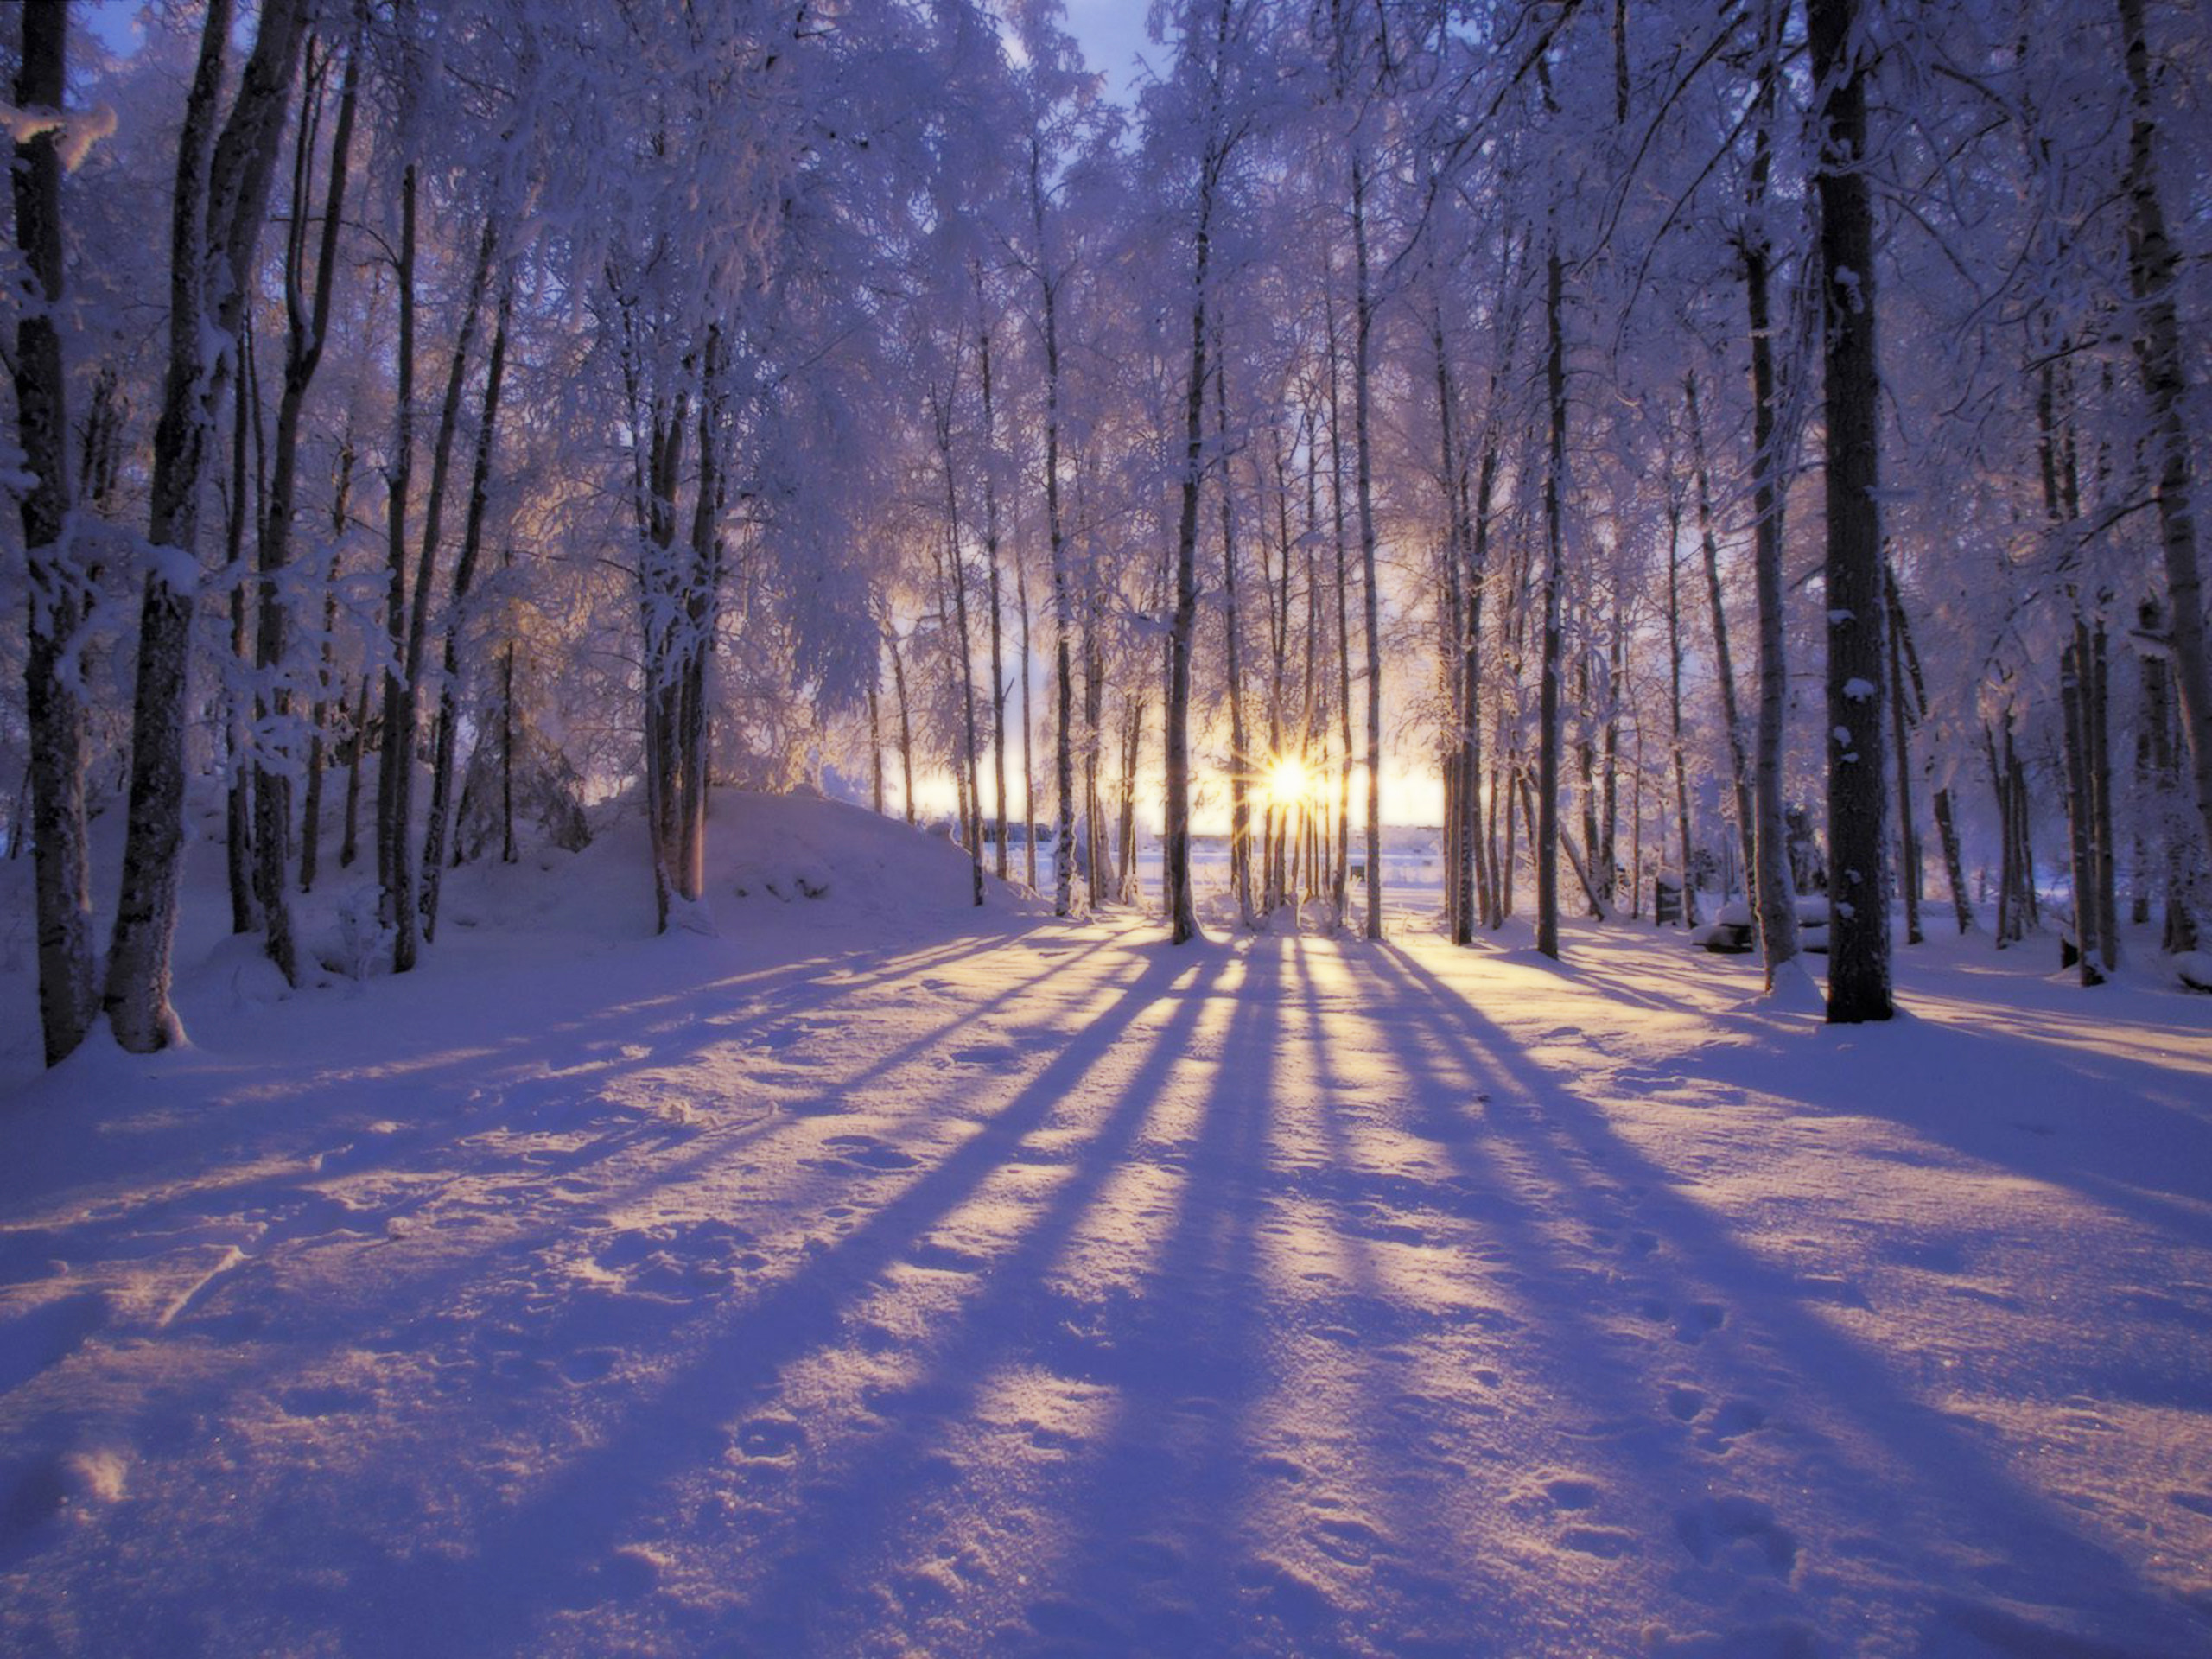 2560x1920 winter scene desktop background Winter Scenes Backgrounds